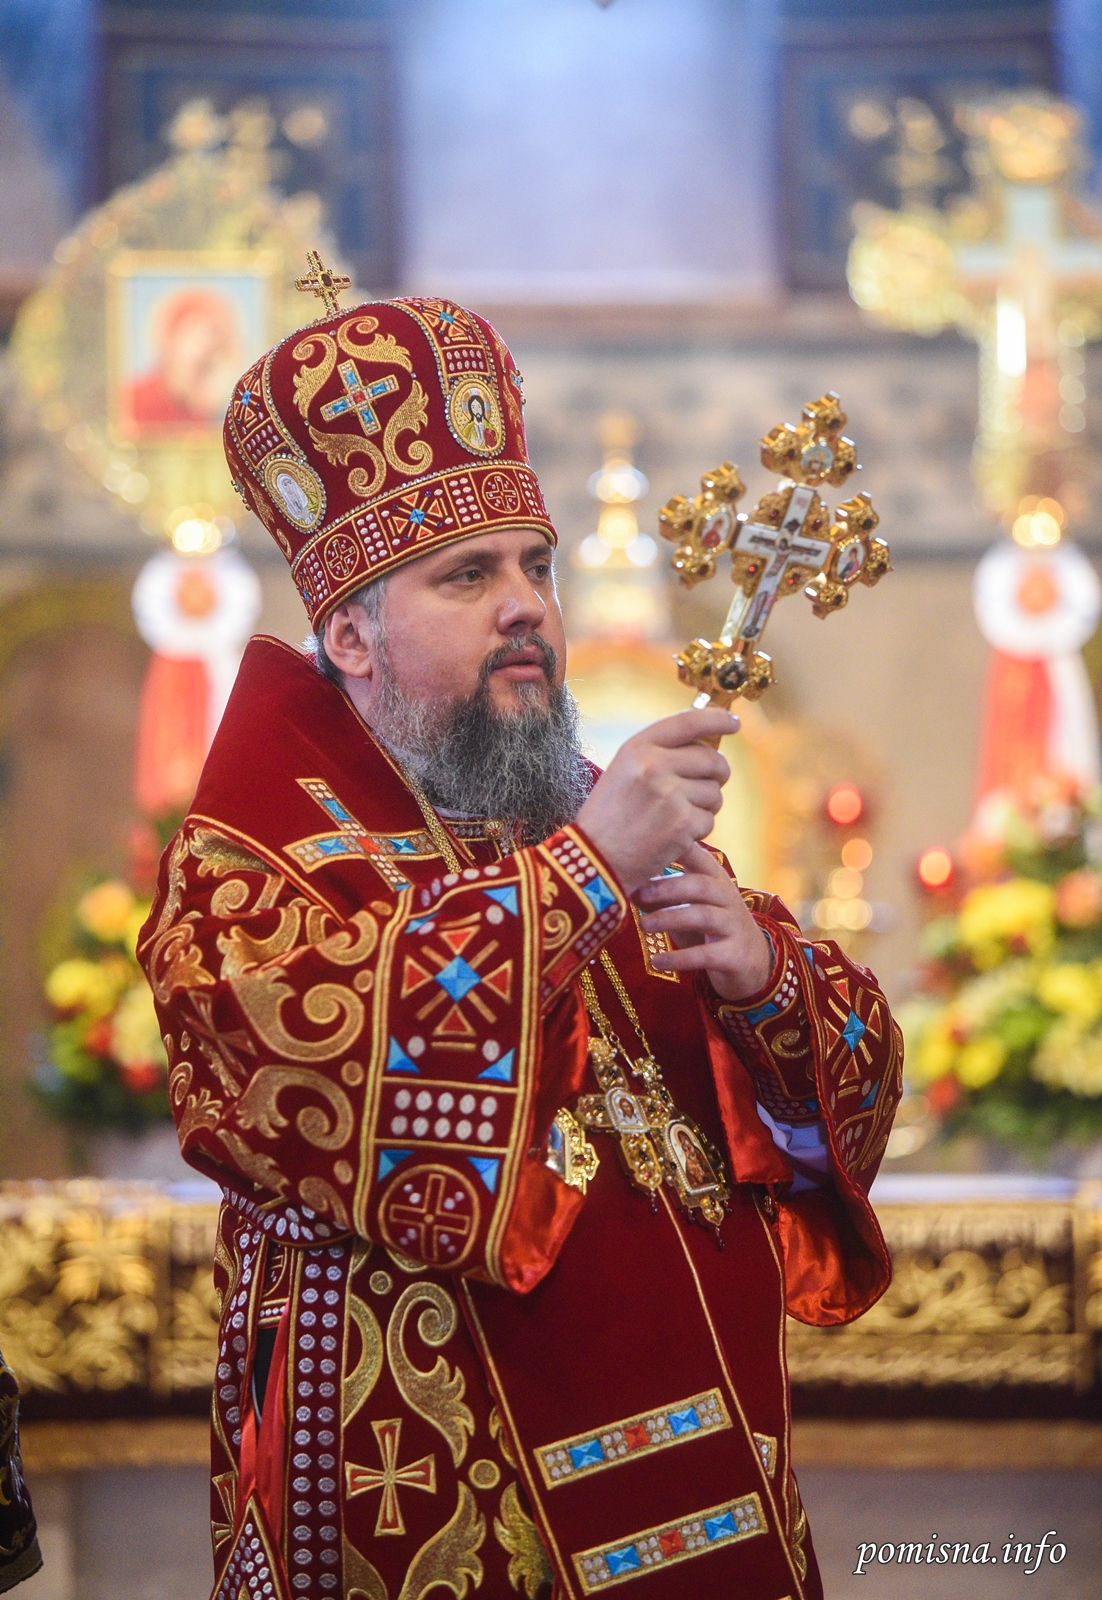 В Сети отметили идентичность облачений патриарха Кирилла и Думенко фото 2